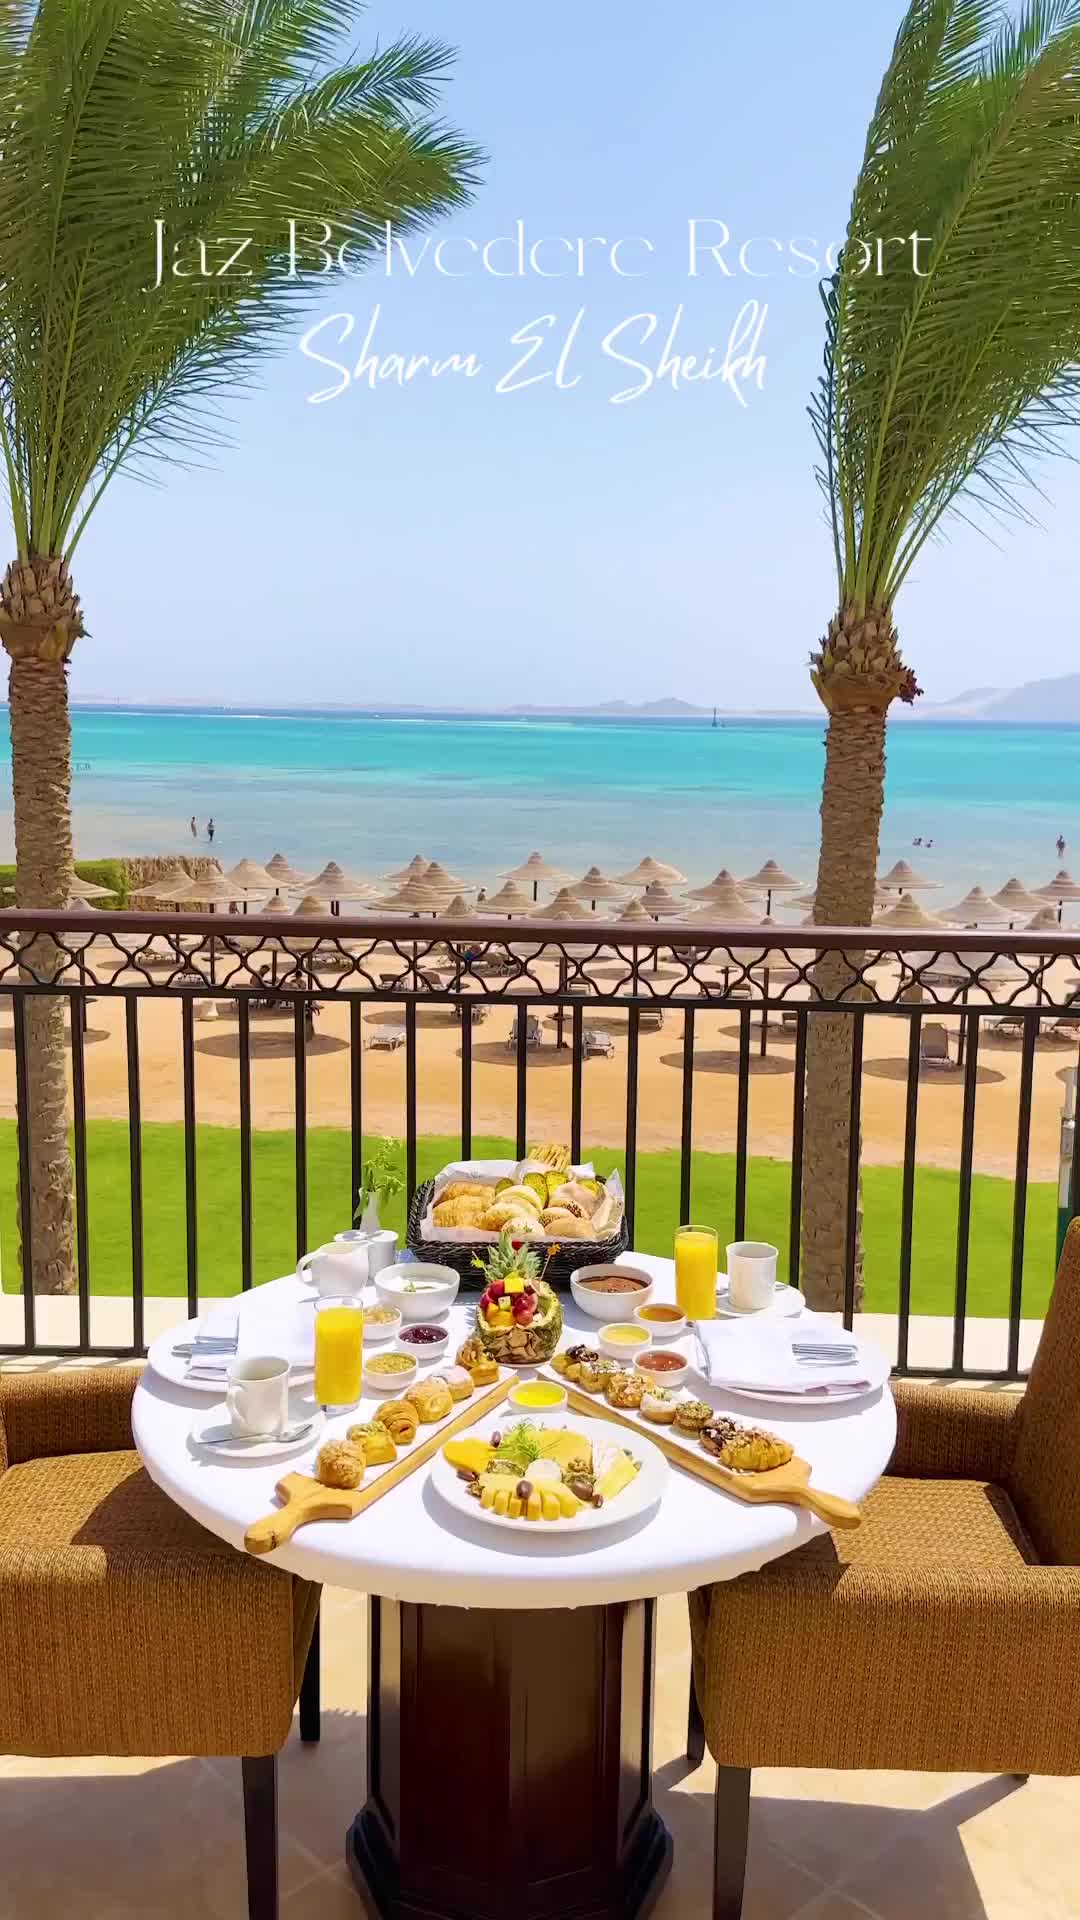 Discover Paradise at Jaz Fanara Resort, Sharm El Sheikh 🌴✨